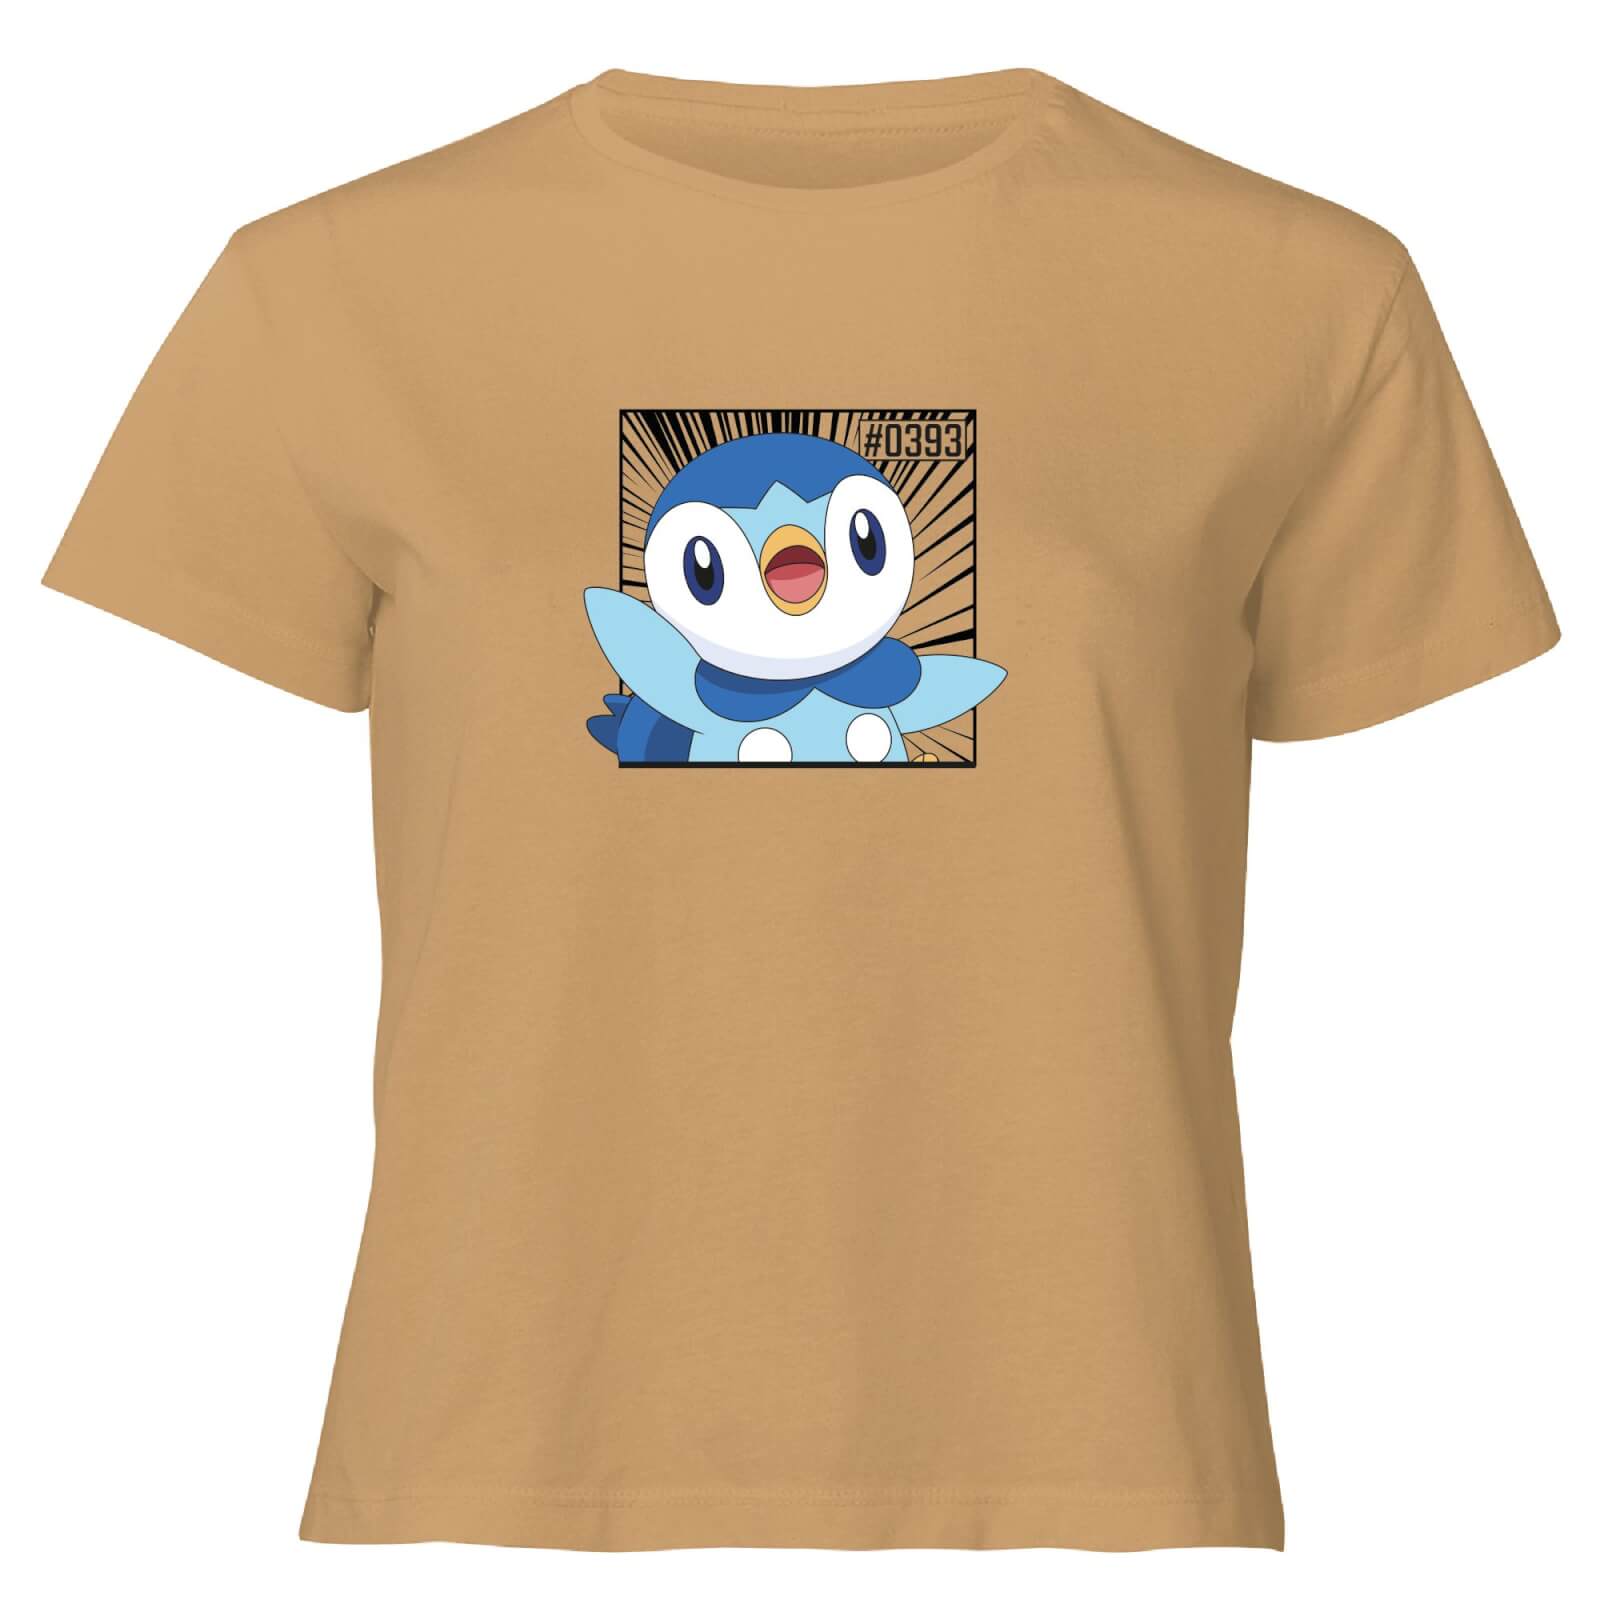 Pokemon Piplup Women's Cropped T-Shirt - Tan - XL